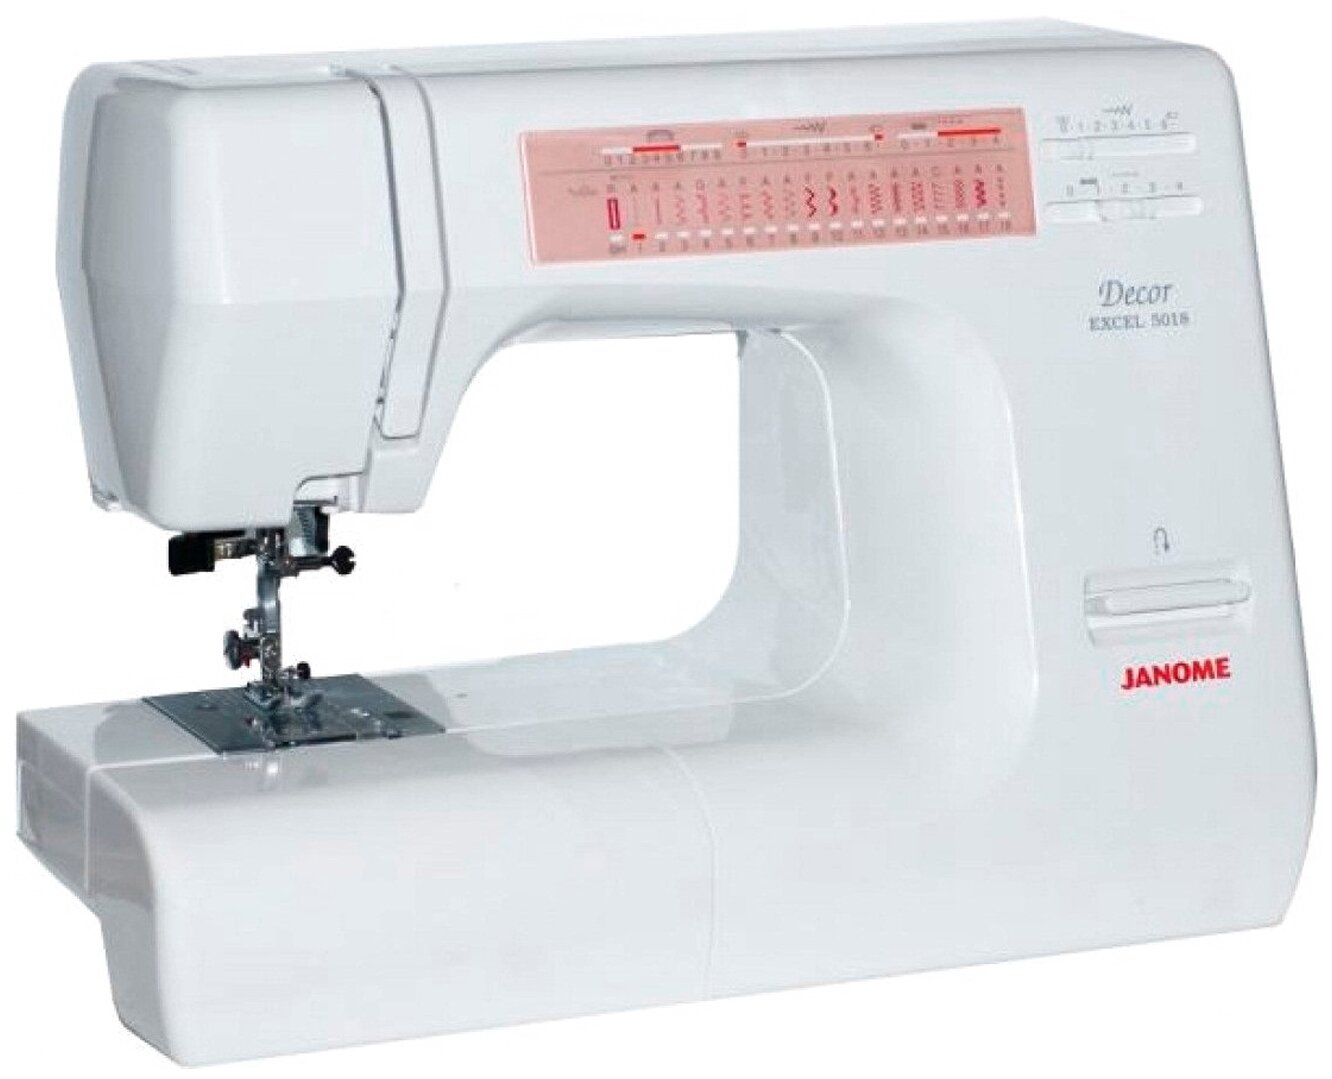 Купить швейную машинку в воронеже. Швейная машина Janome Decor excel 5018. Janome Decor excel 5024. Швейная машина Janome de 5024. Швейная машина Janome Decor excel Pro 5124.